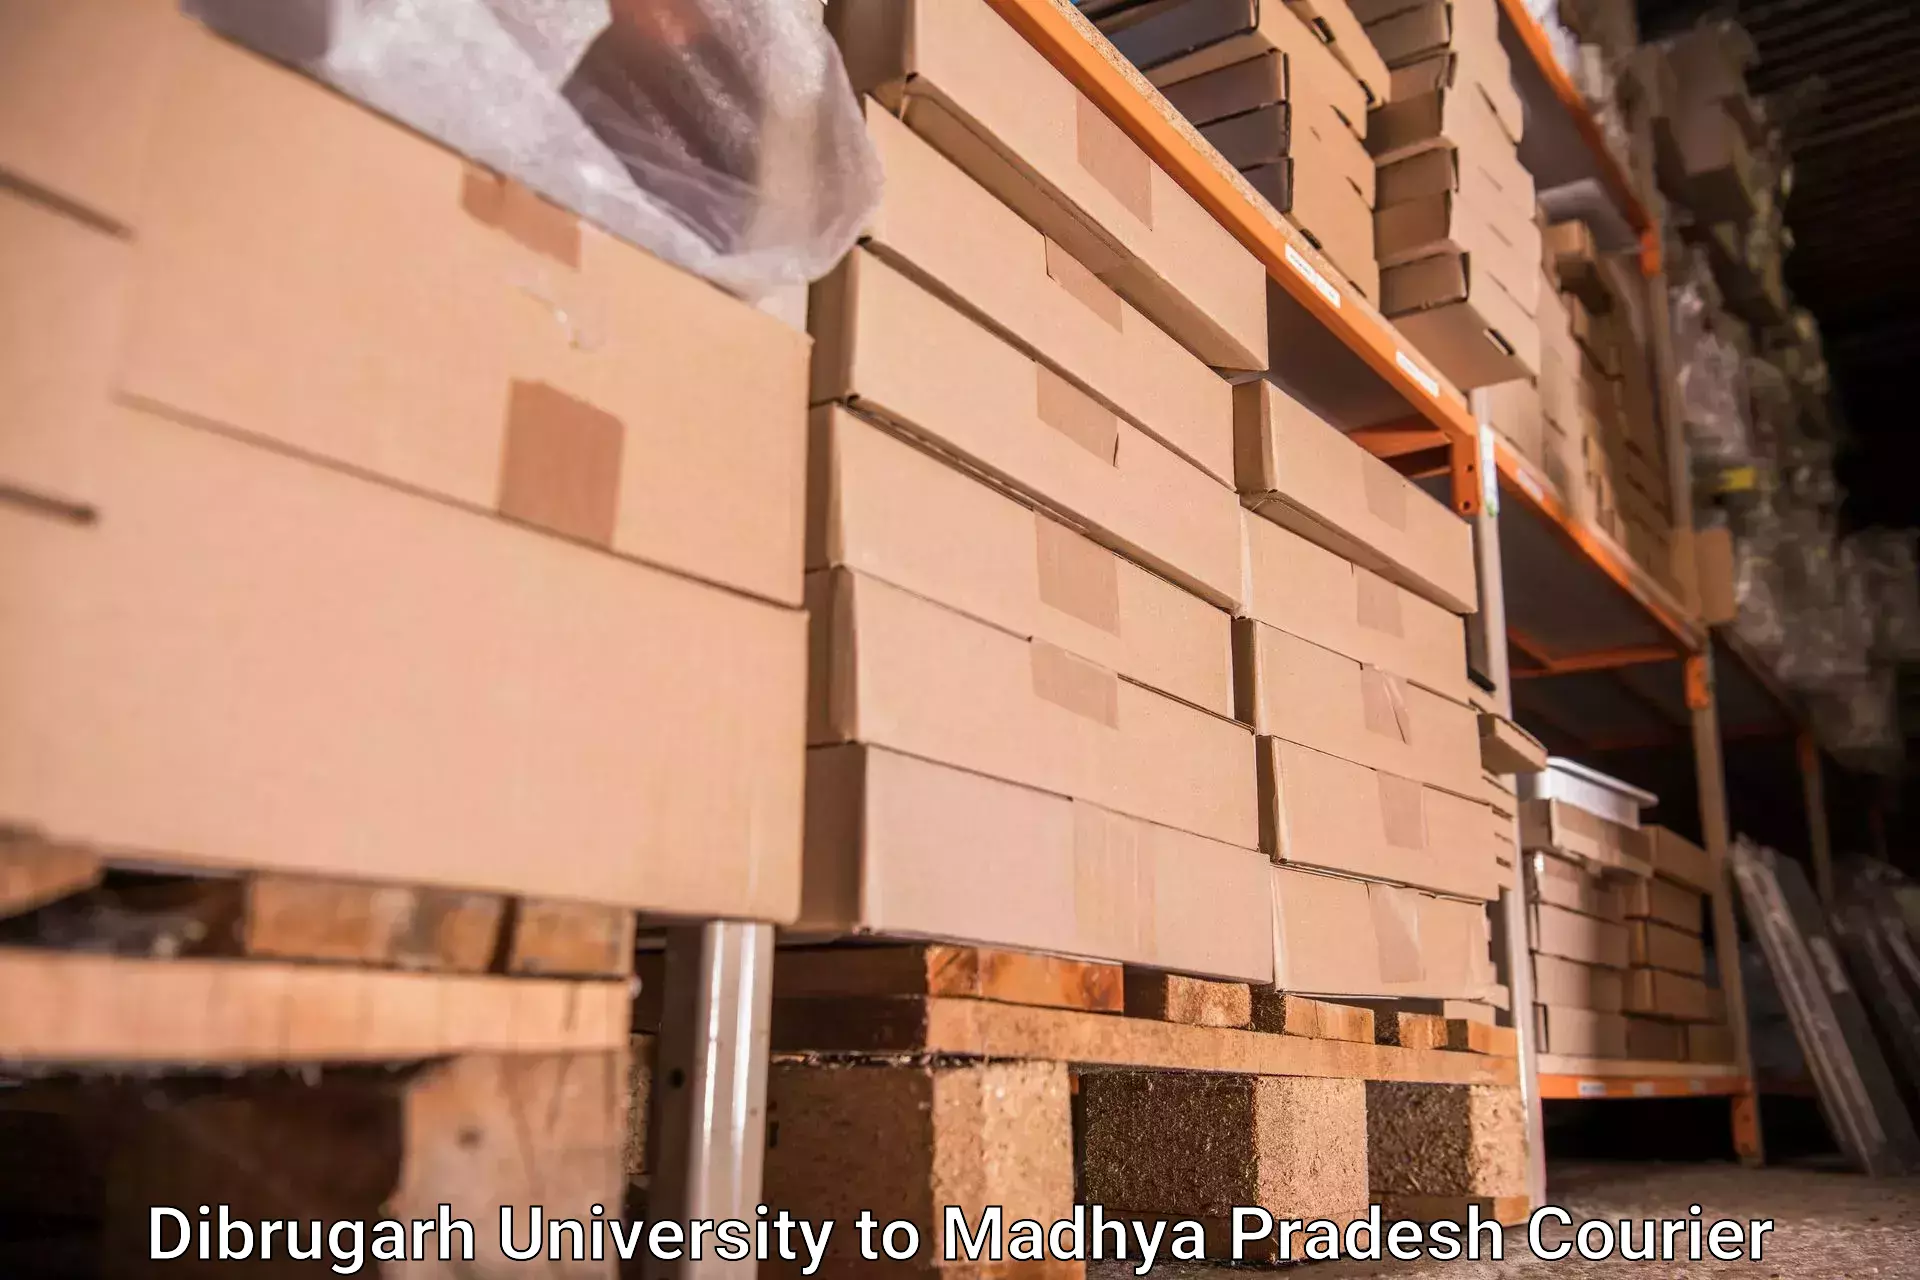 Baggage shipping service Dibrugarh University to Niwari